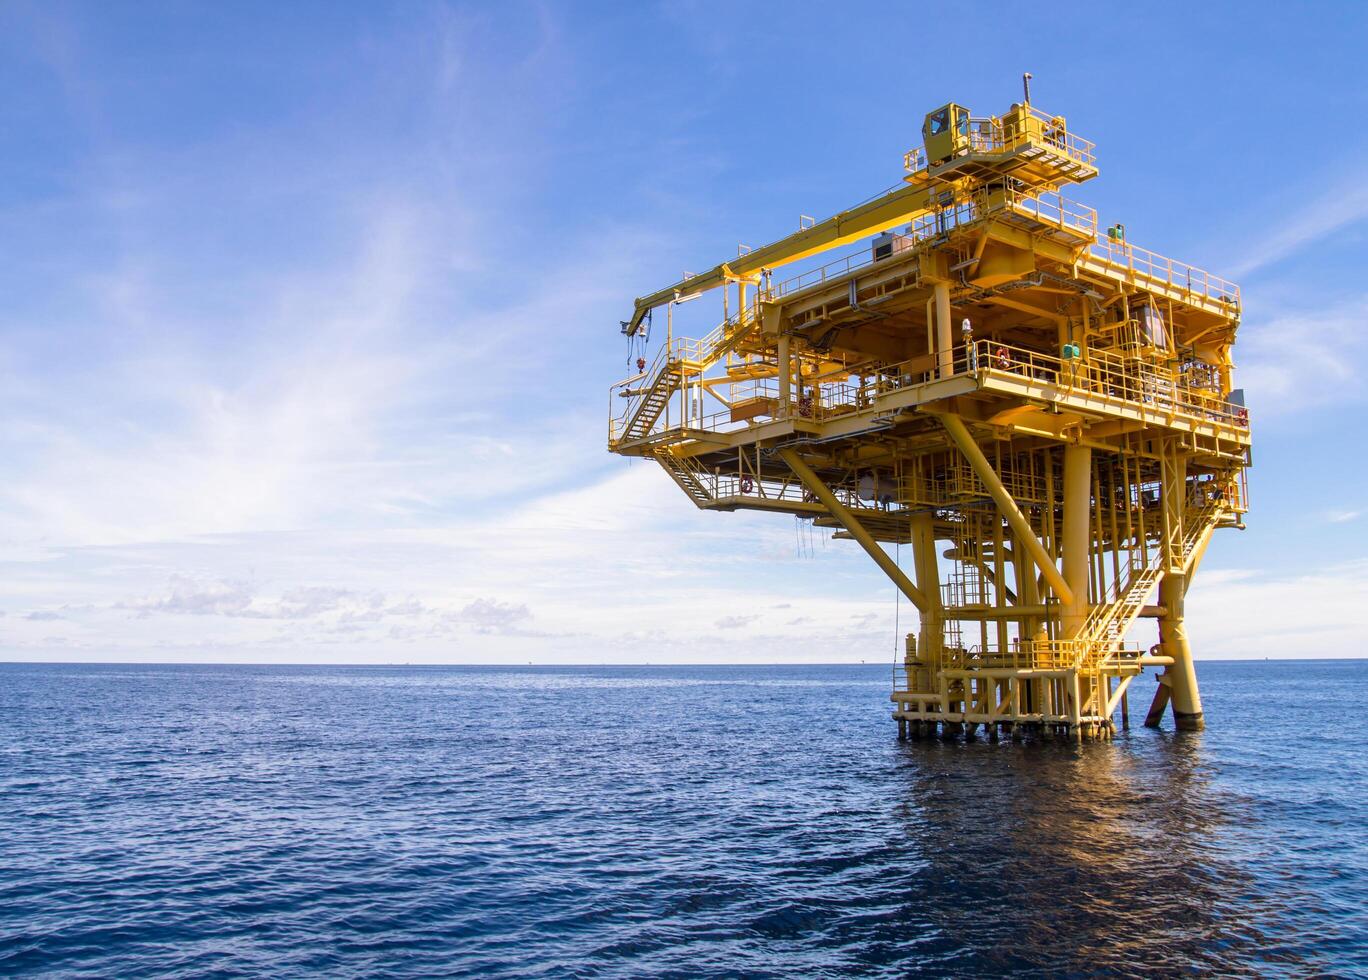 offshore productieplatform in zee voor olie- en gaswinning foto